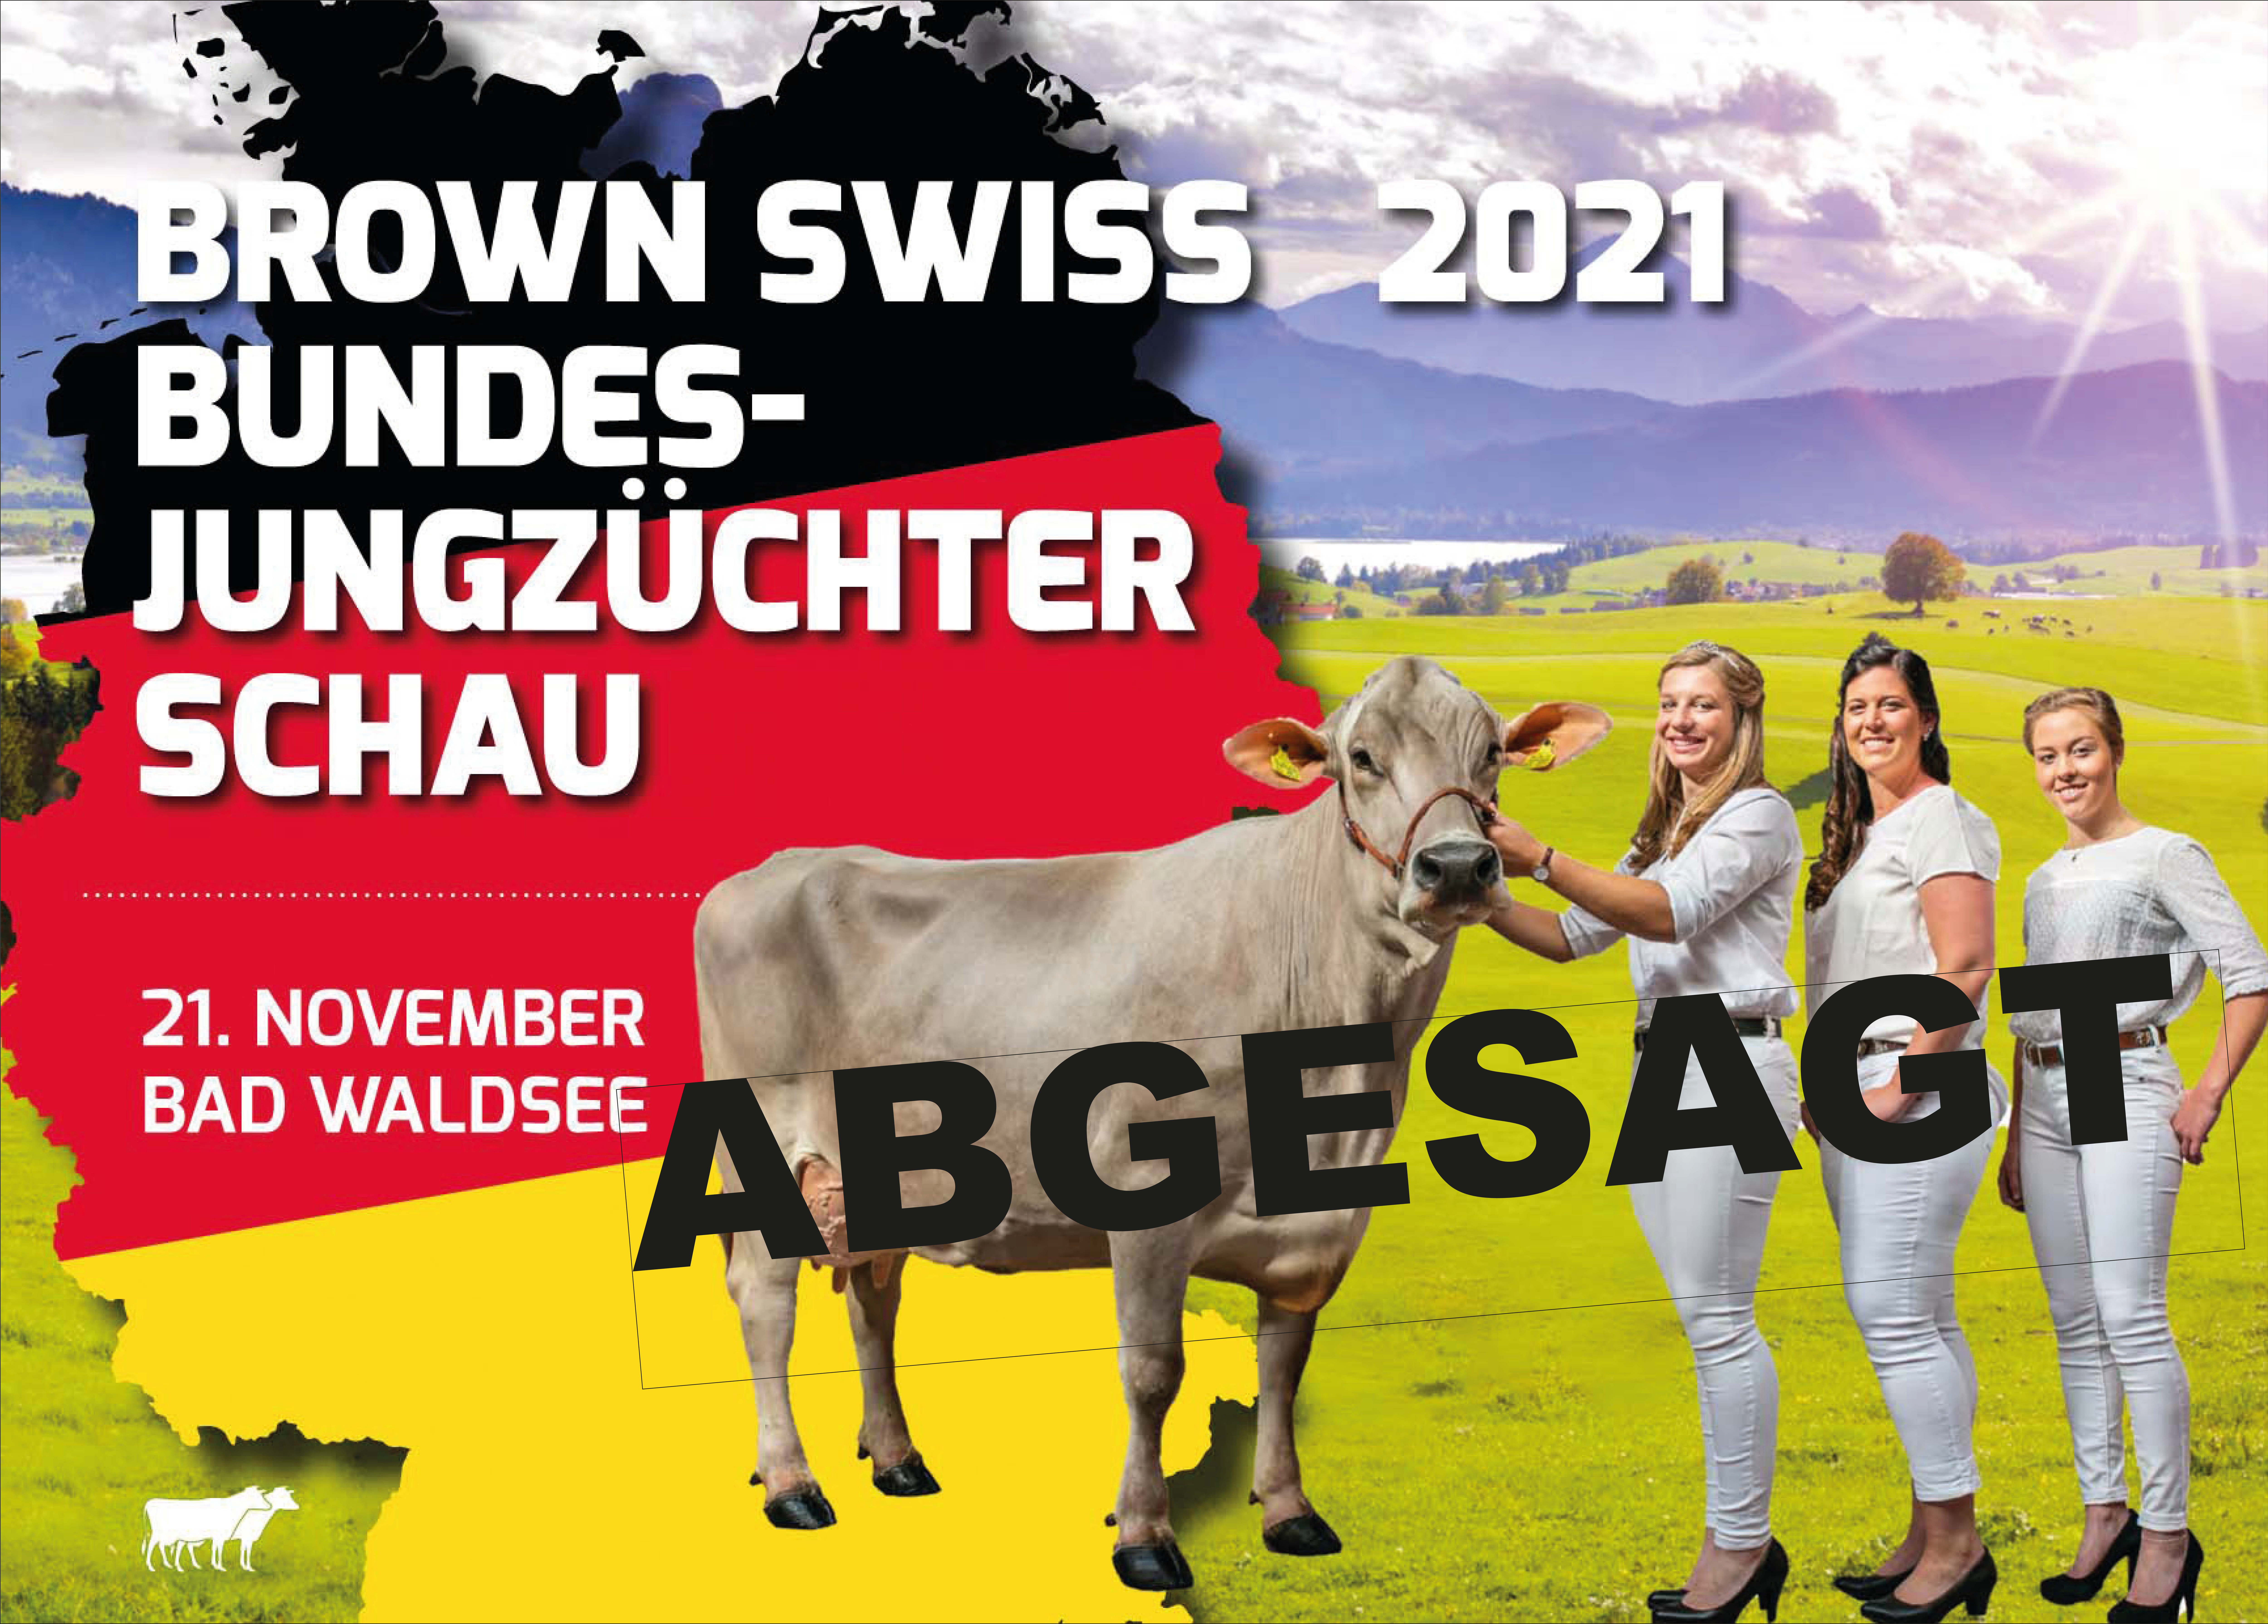 ABGESAGT! Brown Swiss-Bundesjungzüchterschau 2021